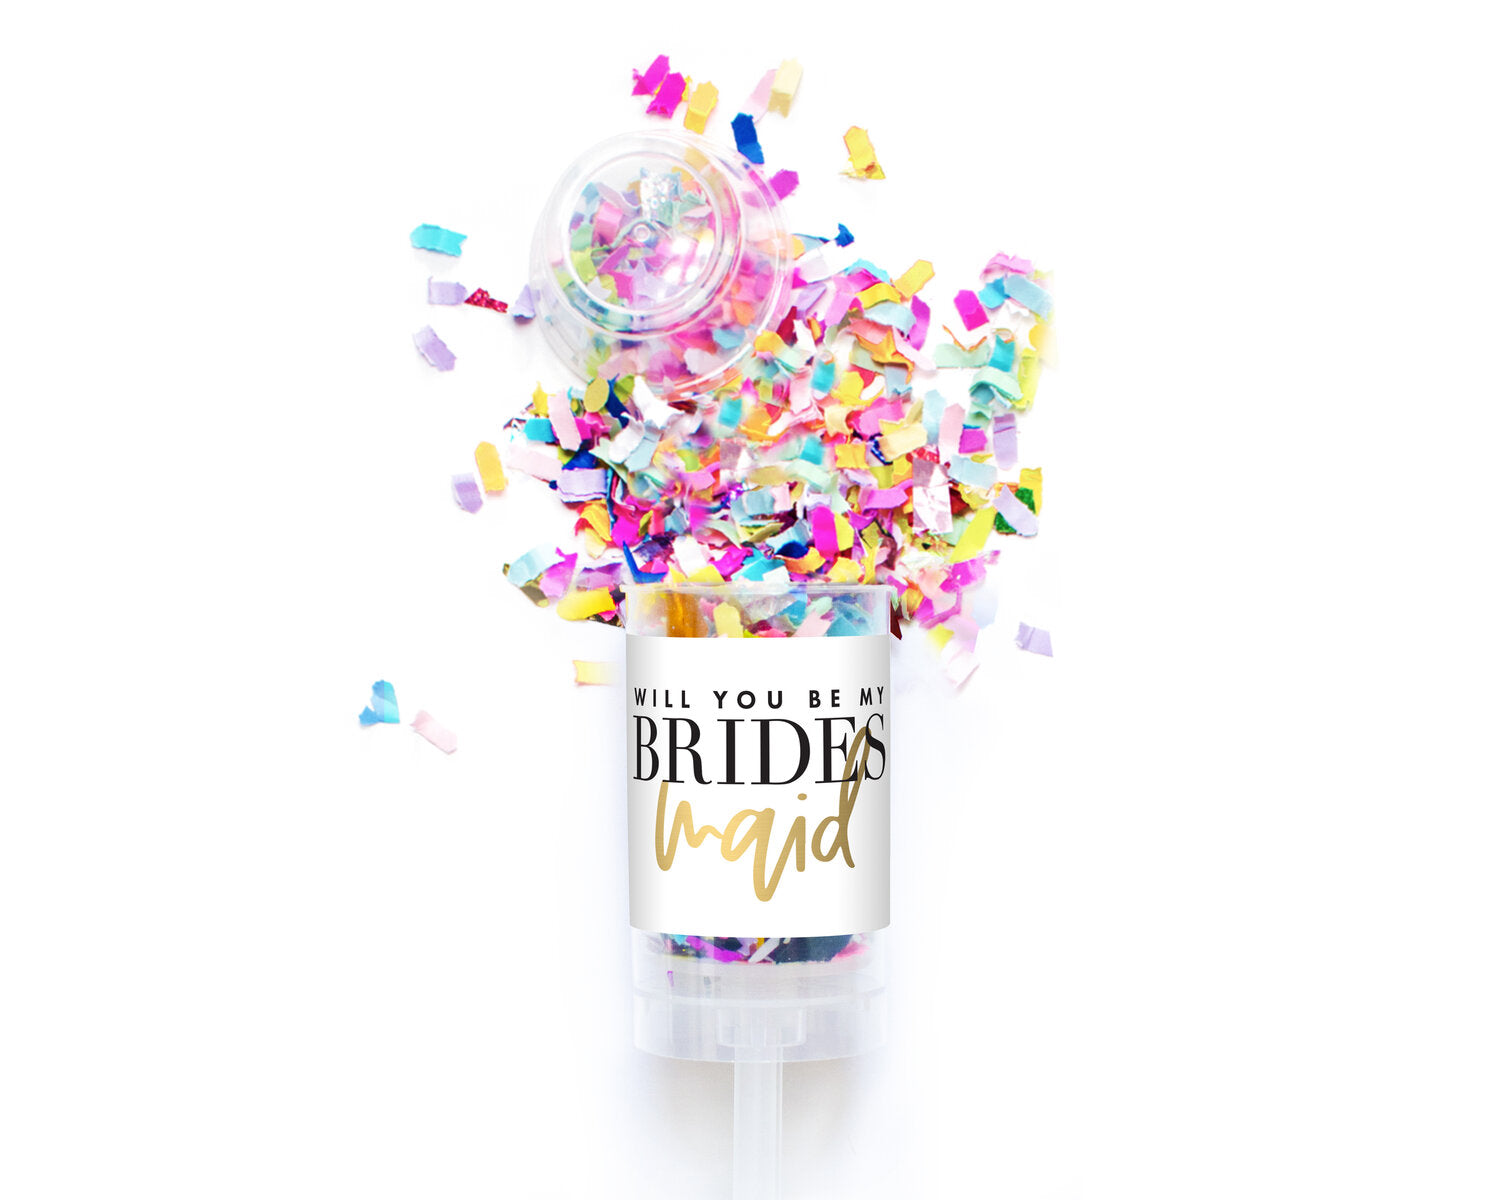 Bridal Party Confetti Popper